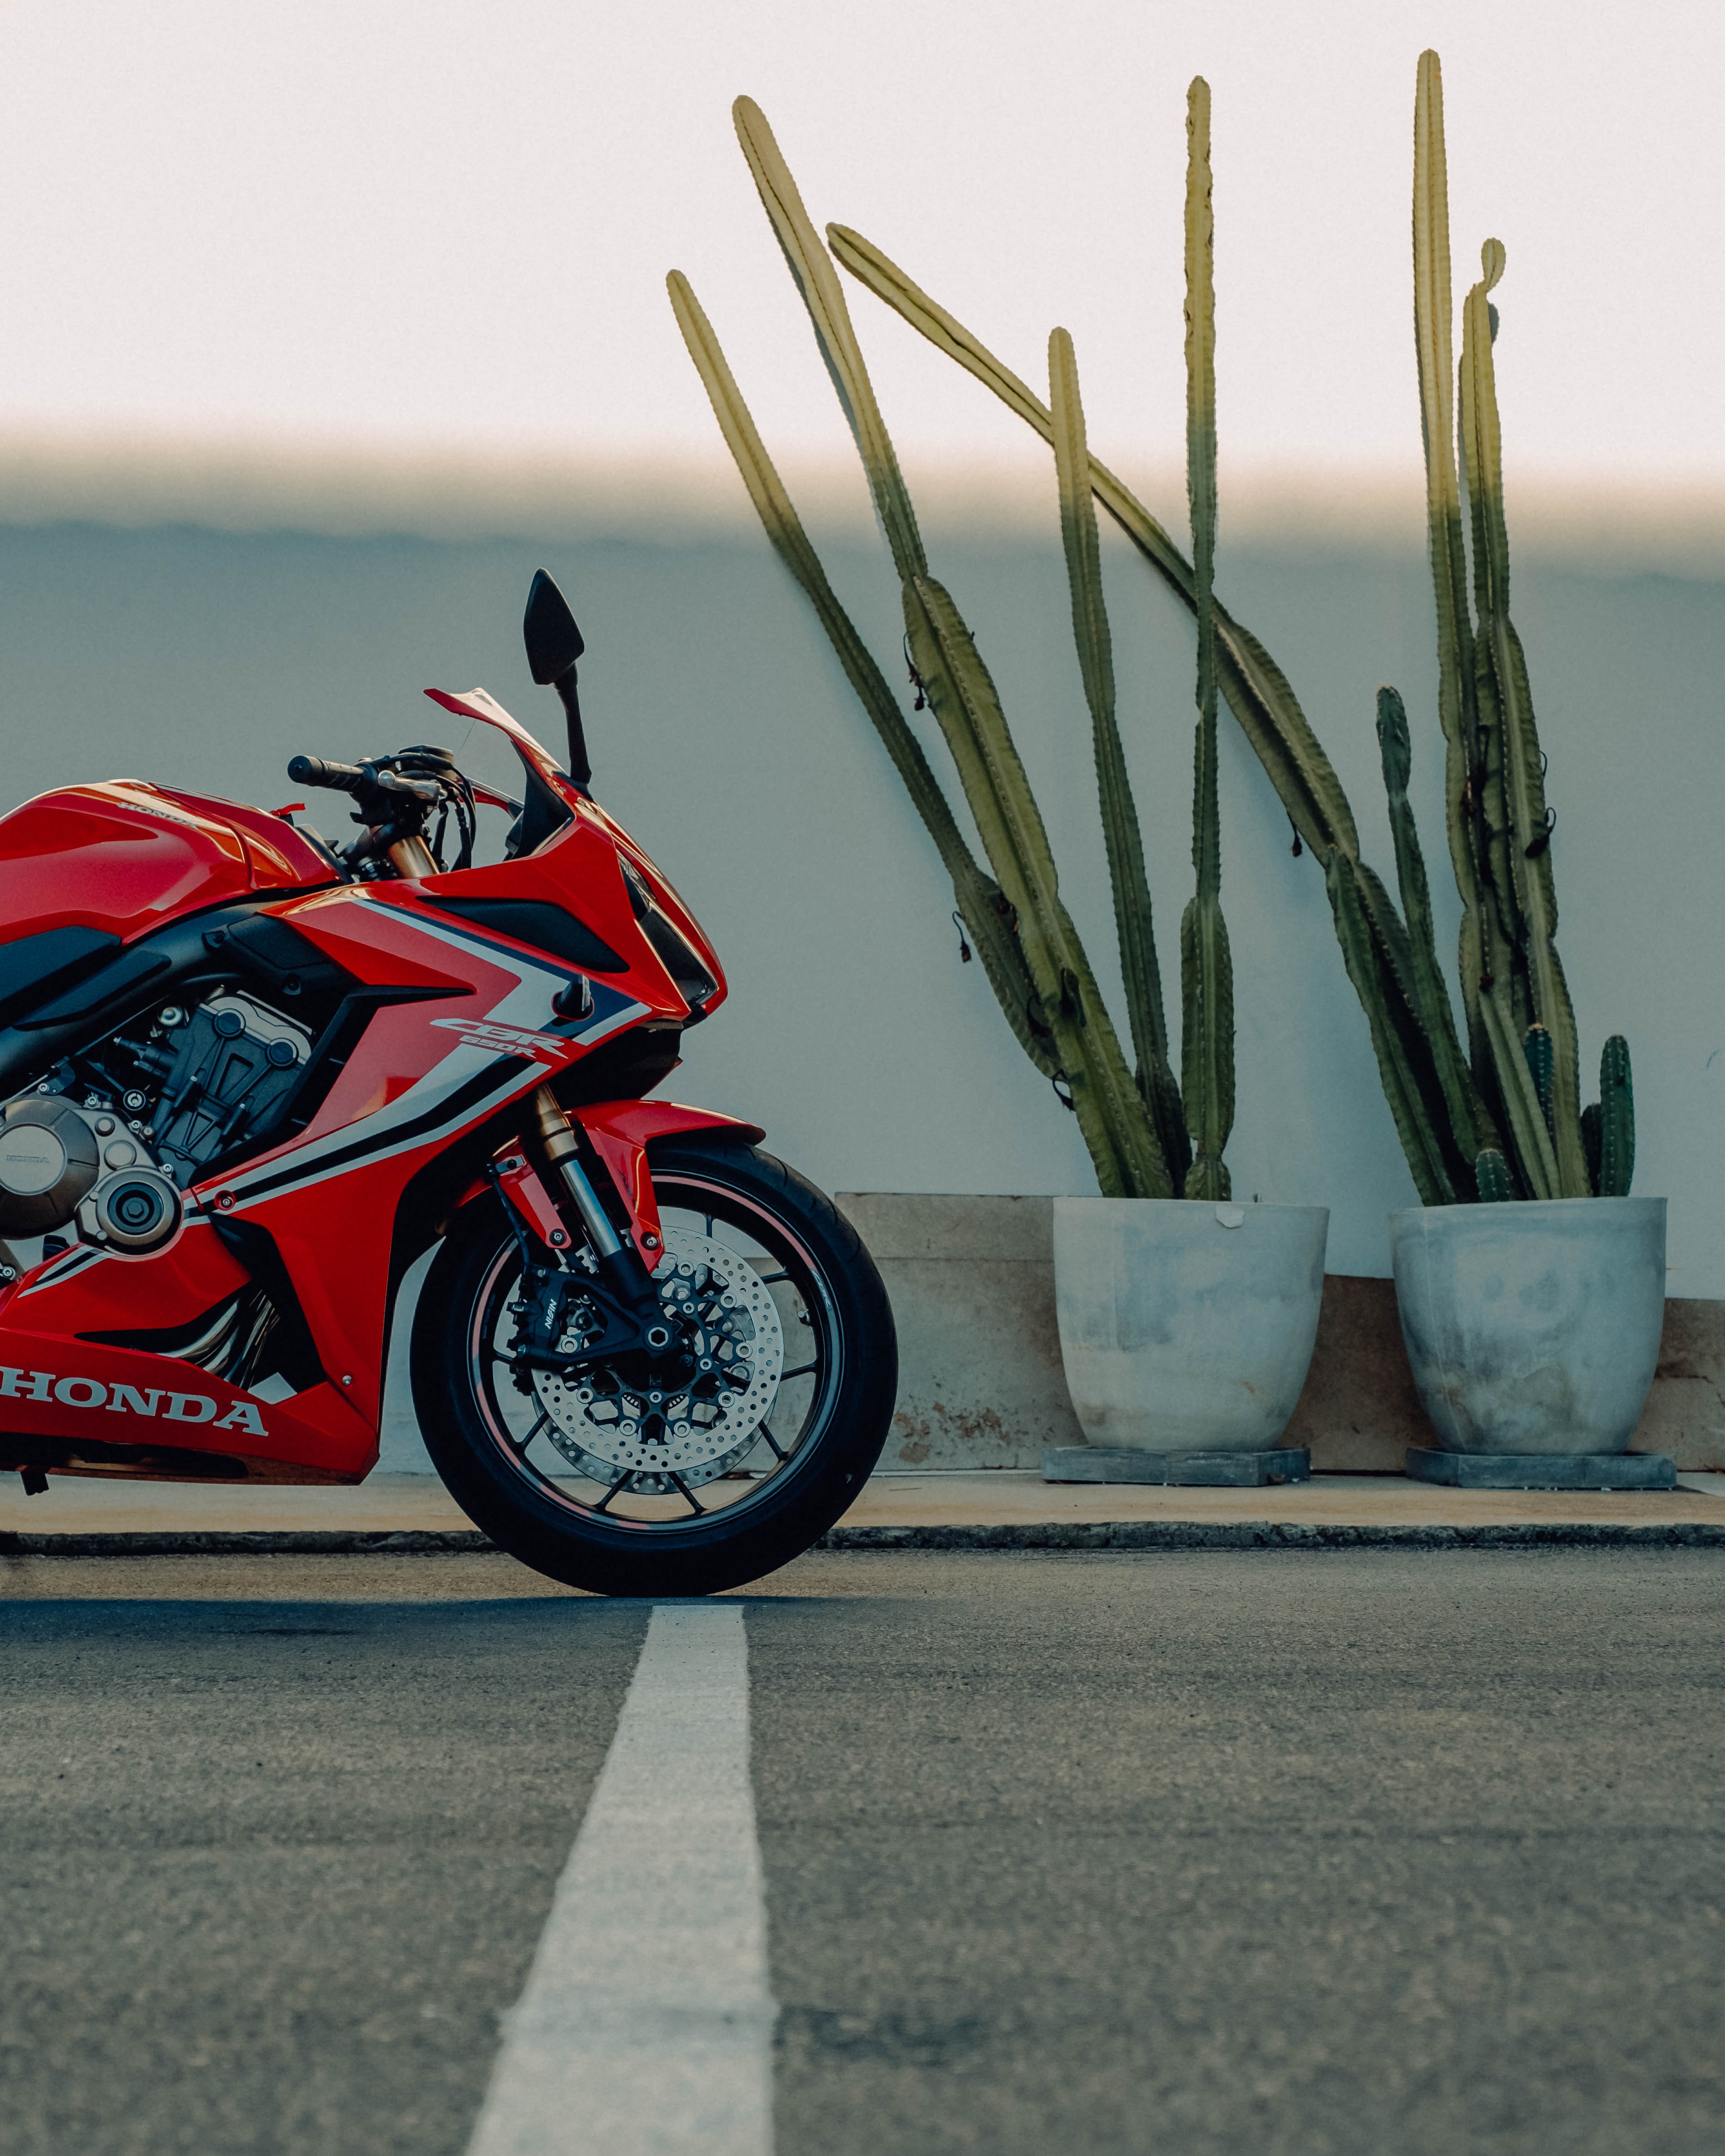 honda, motorcycles, red, side view, motorcycle, bike 8K